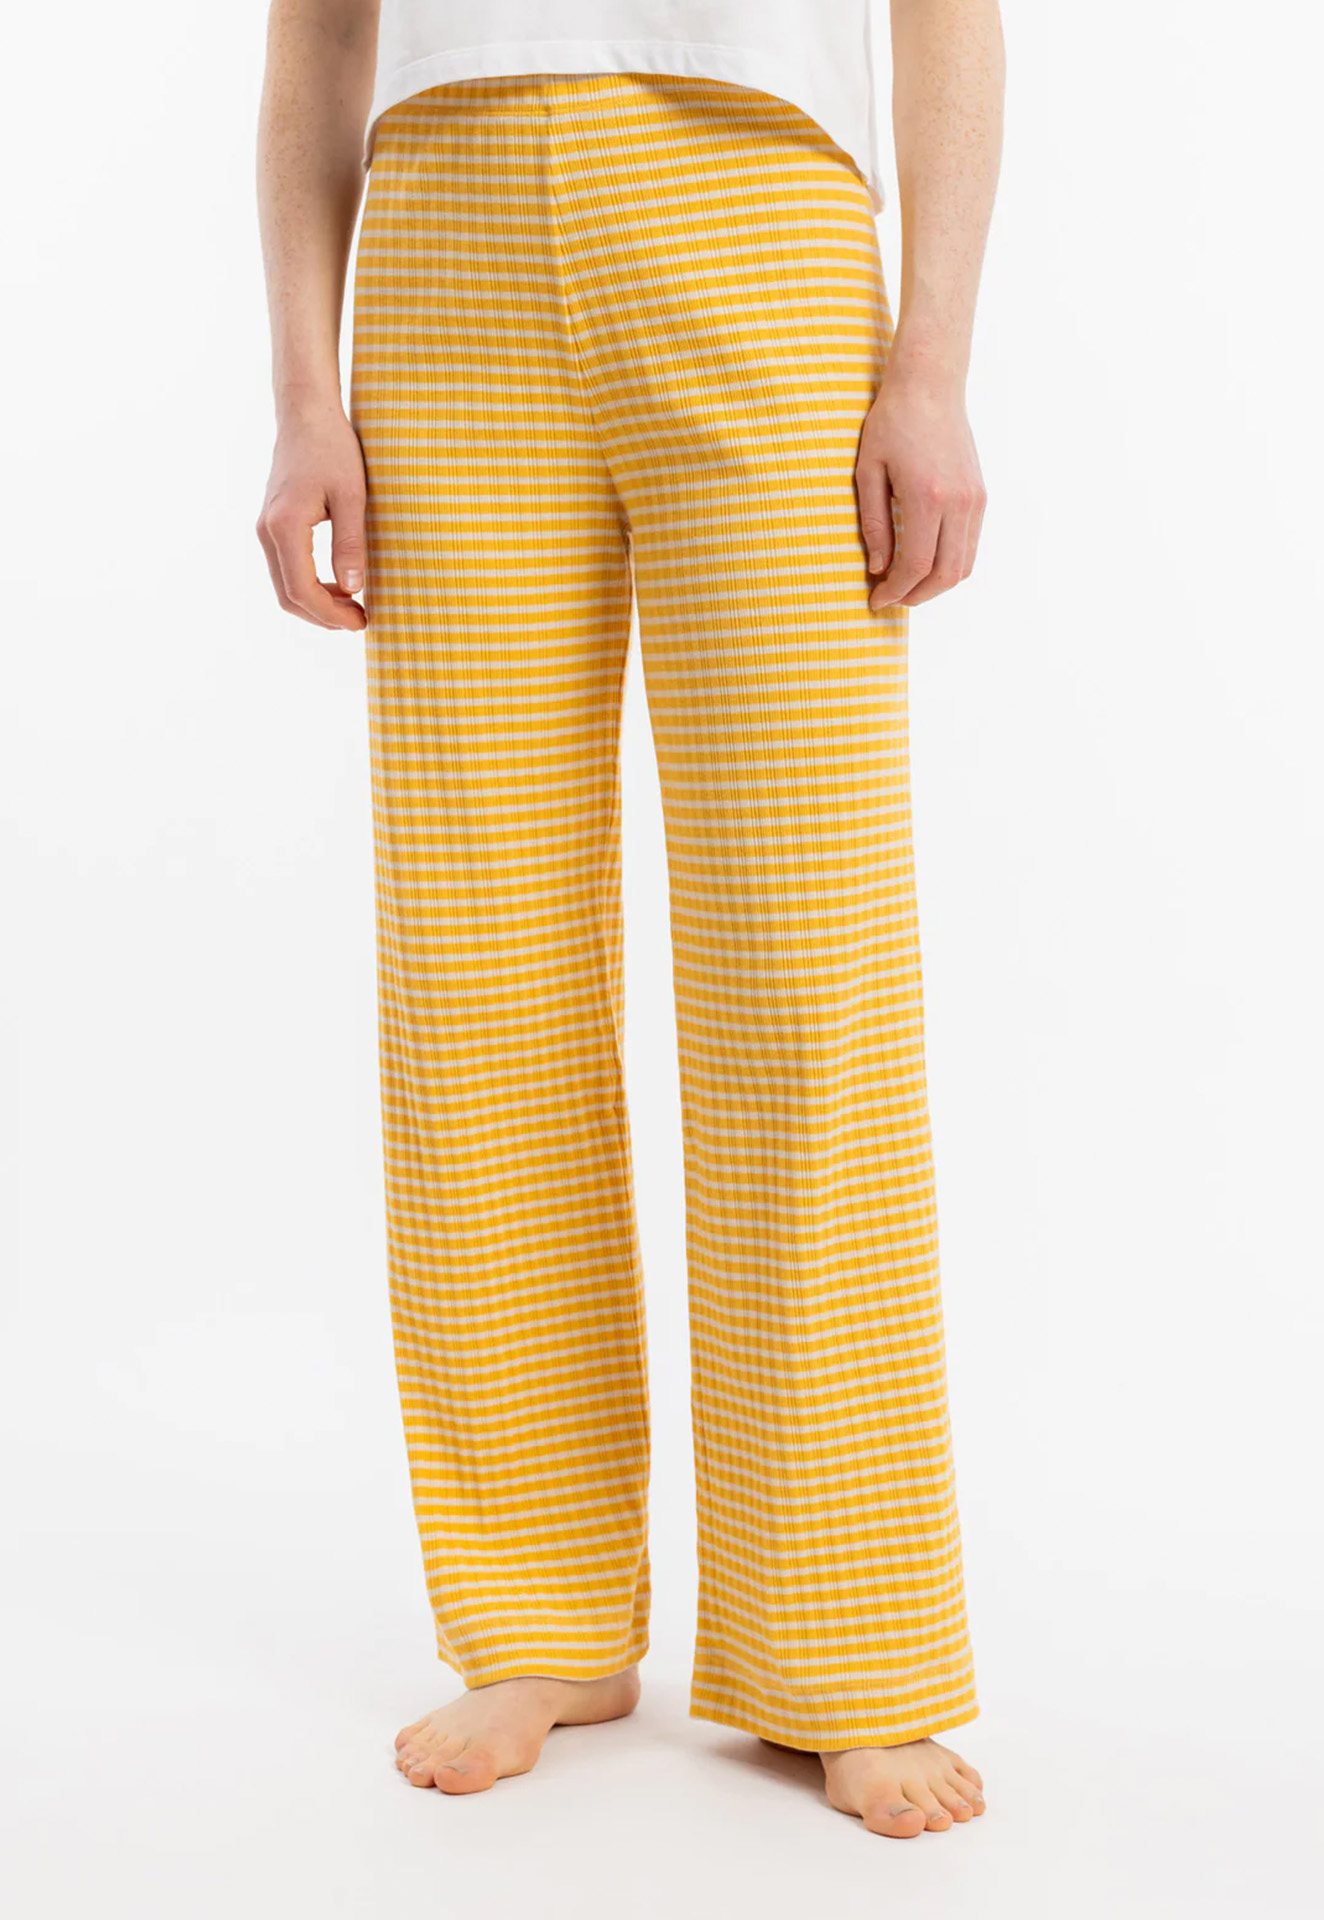 ROTHOLZ Ribbed Lounge Pant yellow/sand stripe M